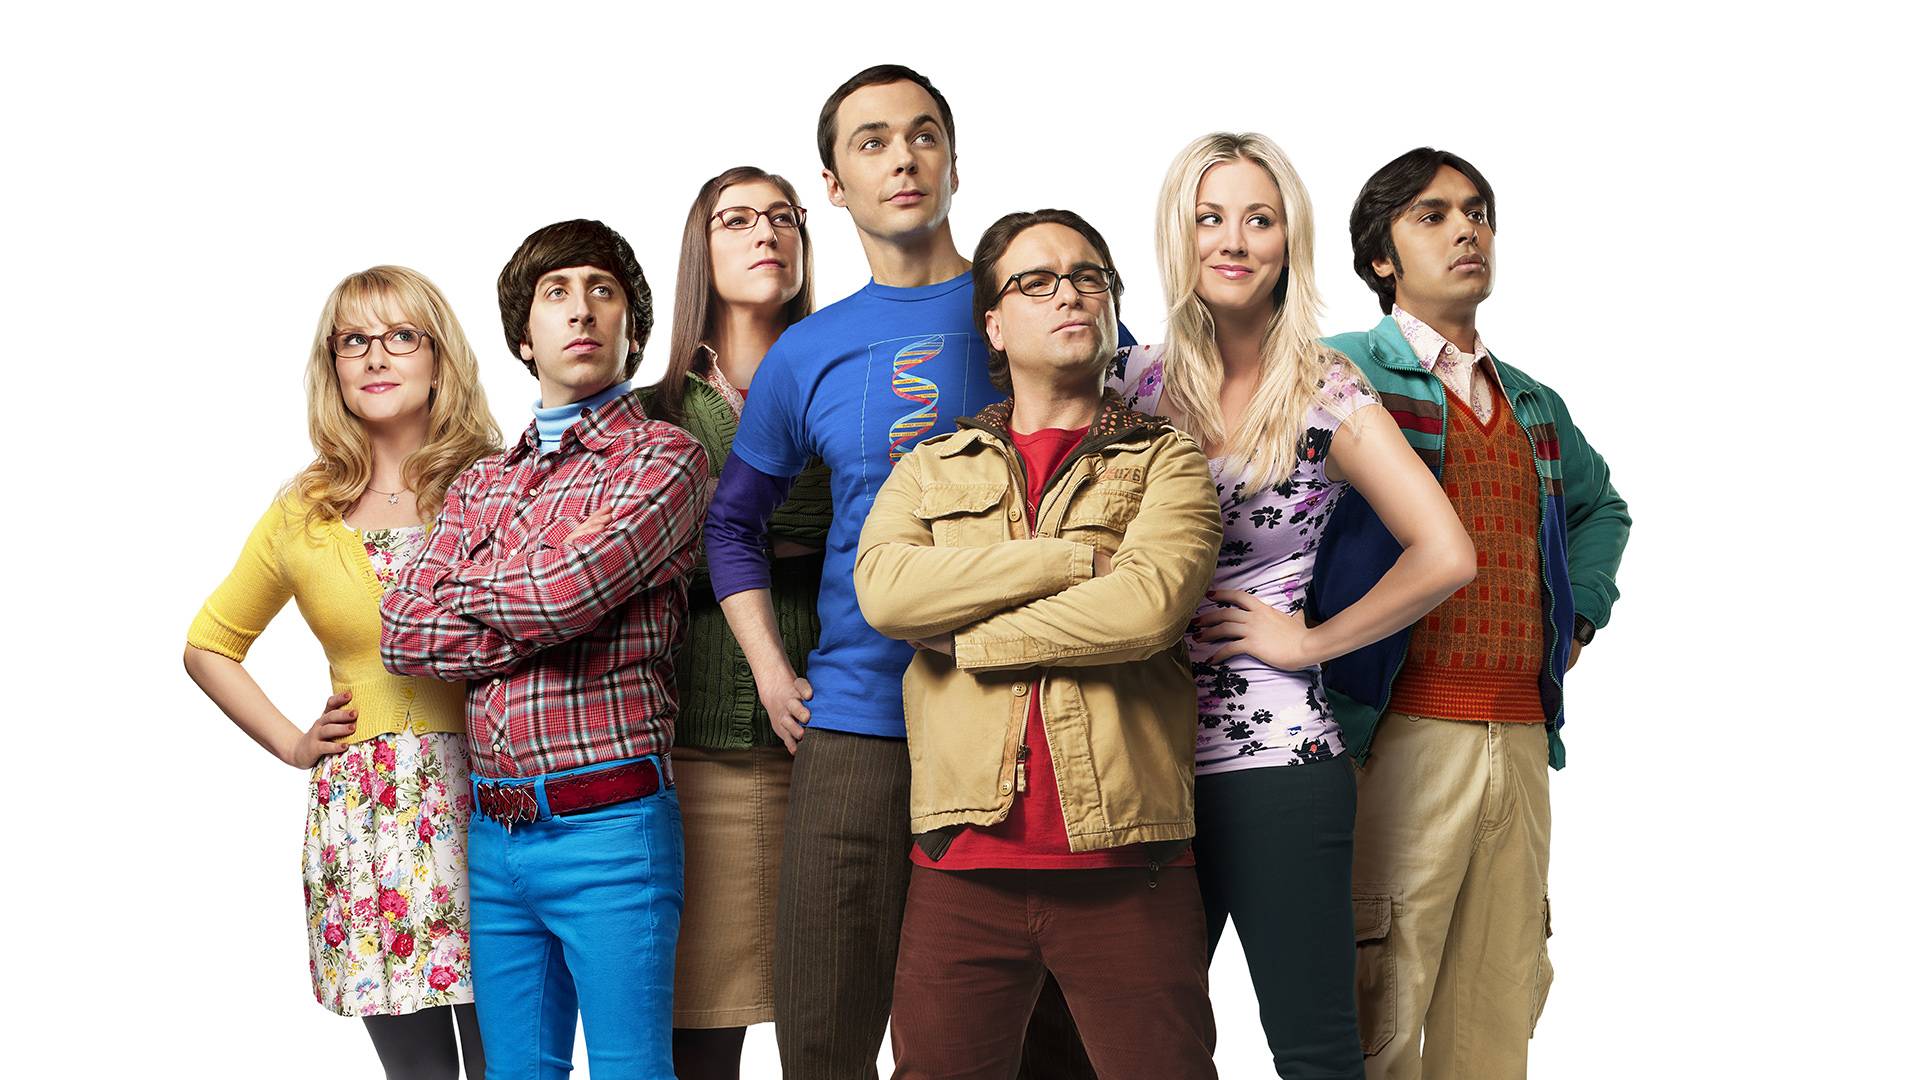 1920x1080 The Big Bang Theory hình nền